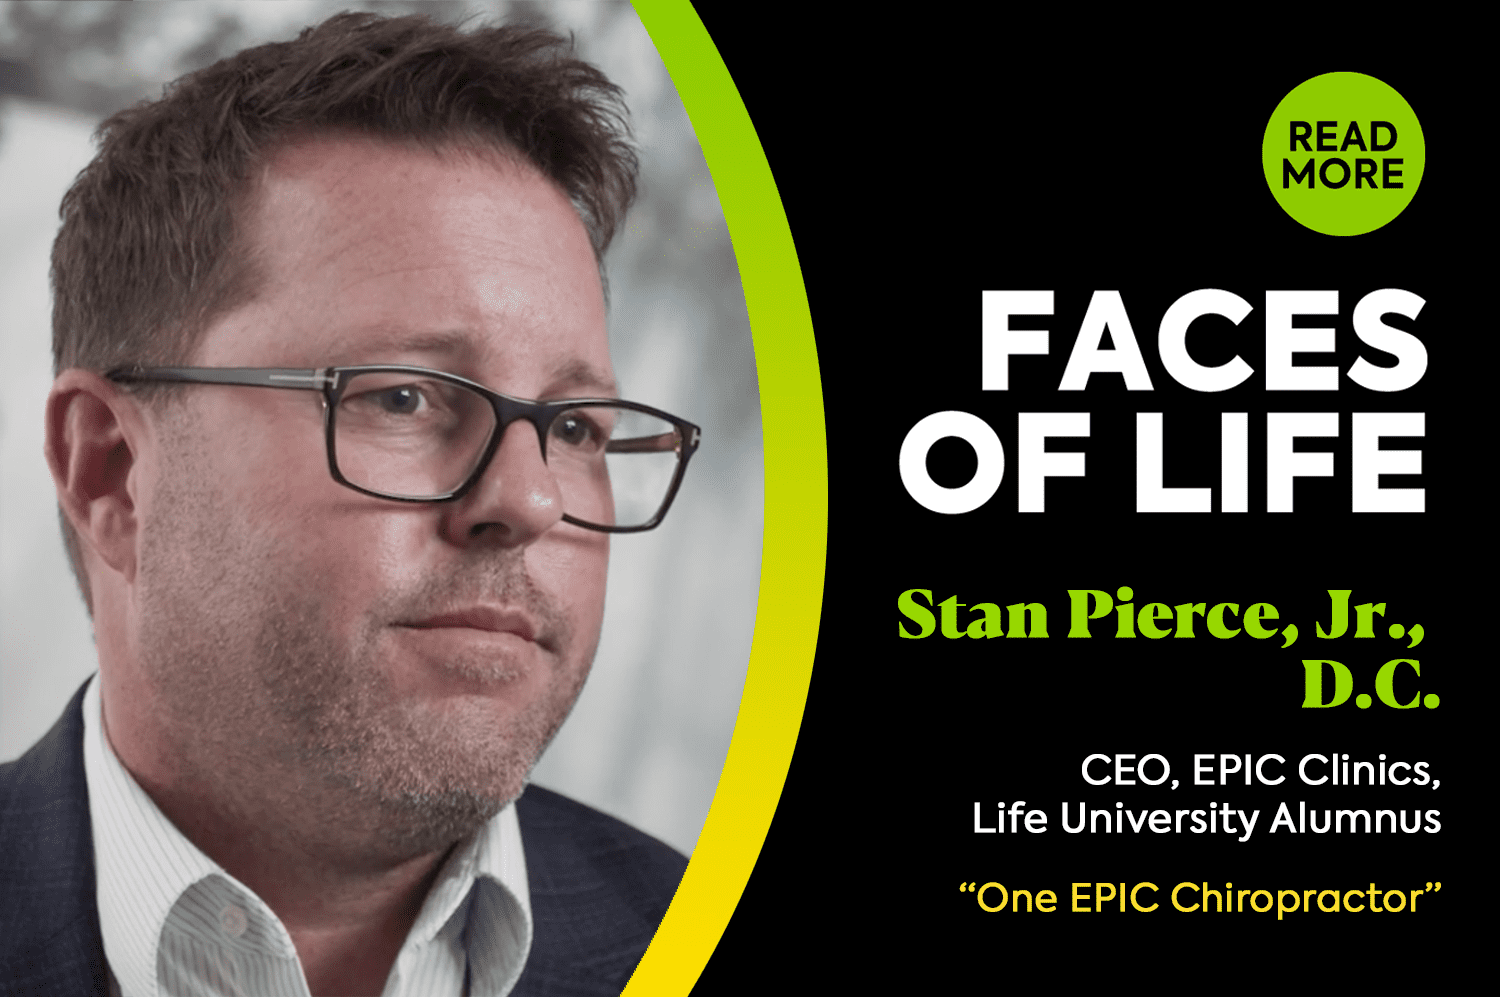 Faces of LIFE – Stan Pierce, Jr., D.C.